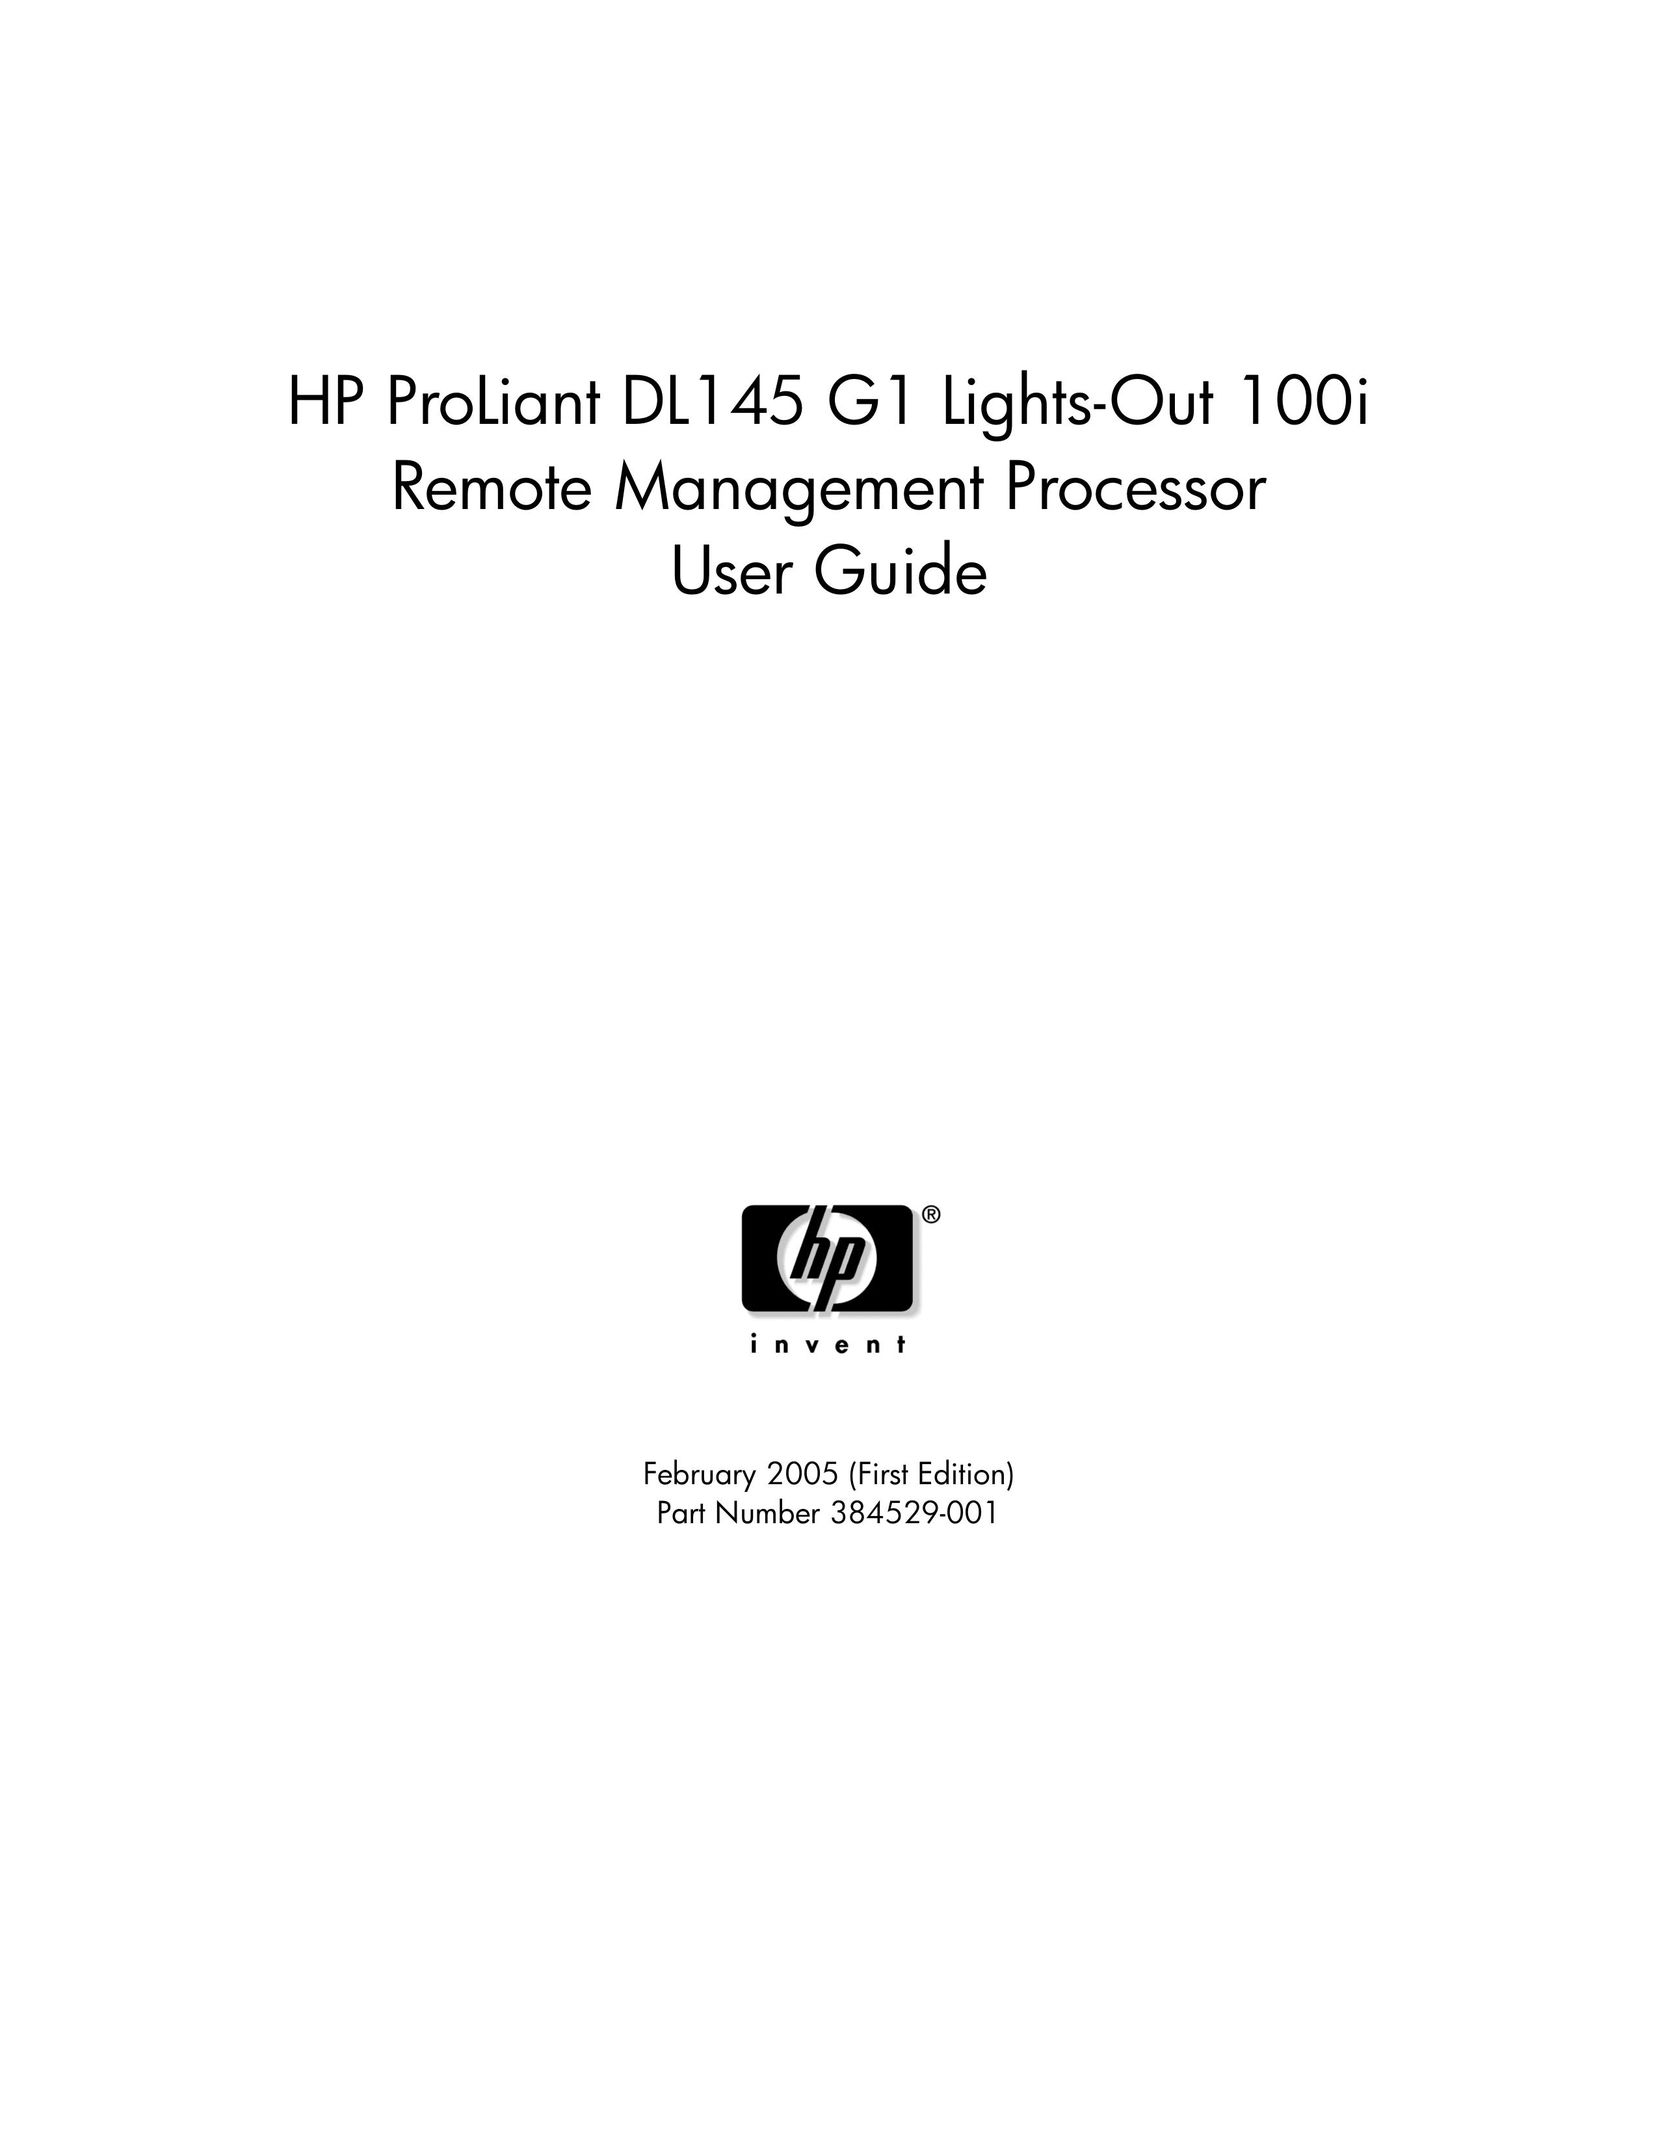 HP (Hewlett-Packard) 384529-001 Personal Computer User Manual